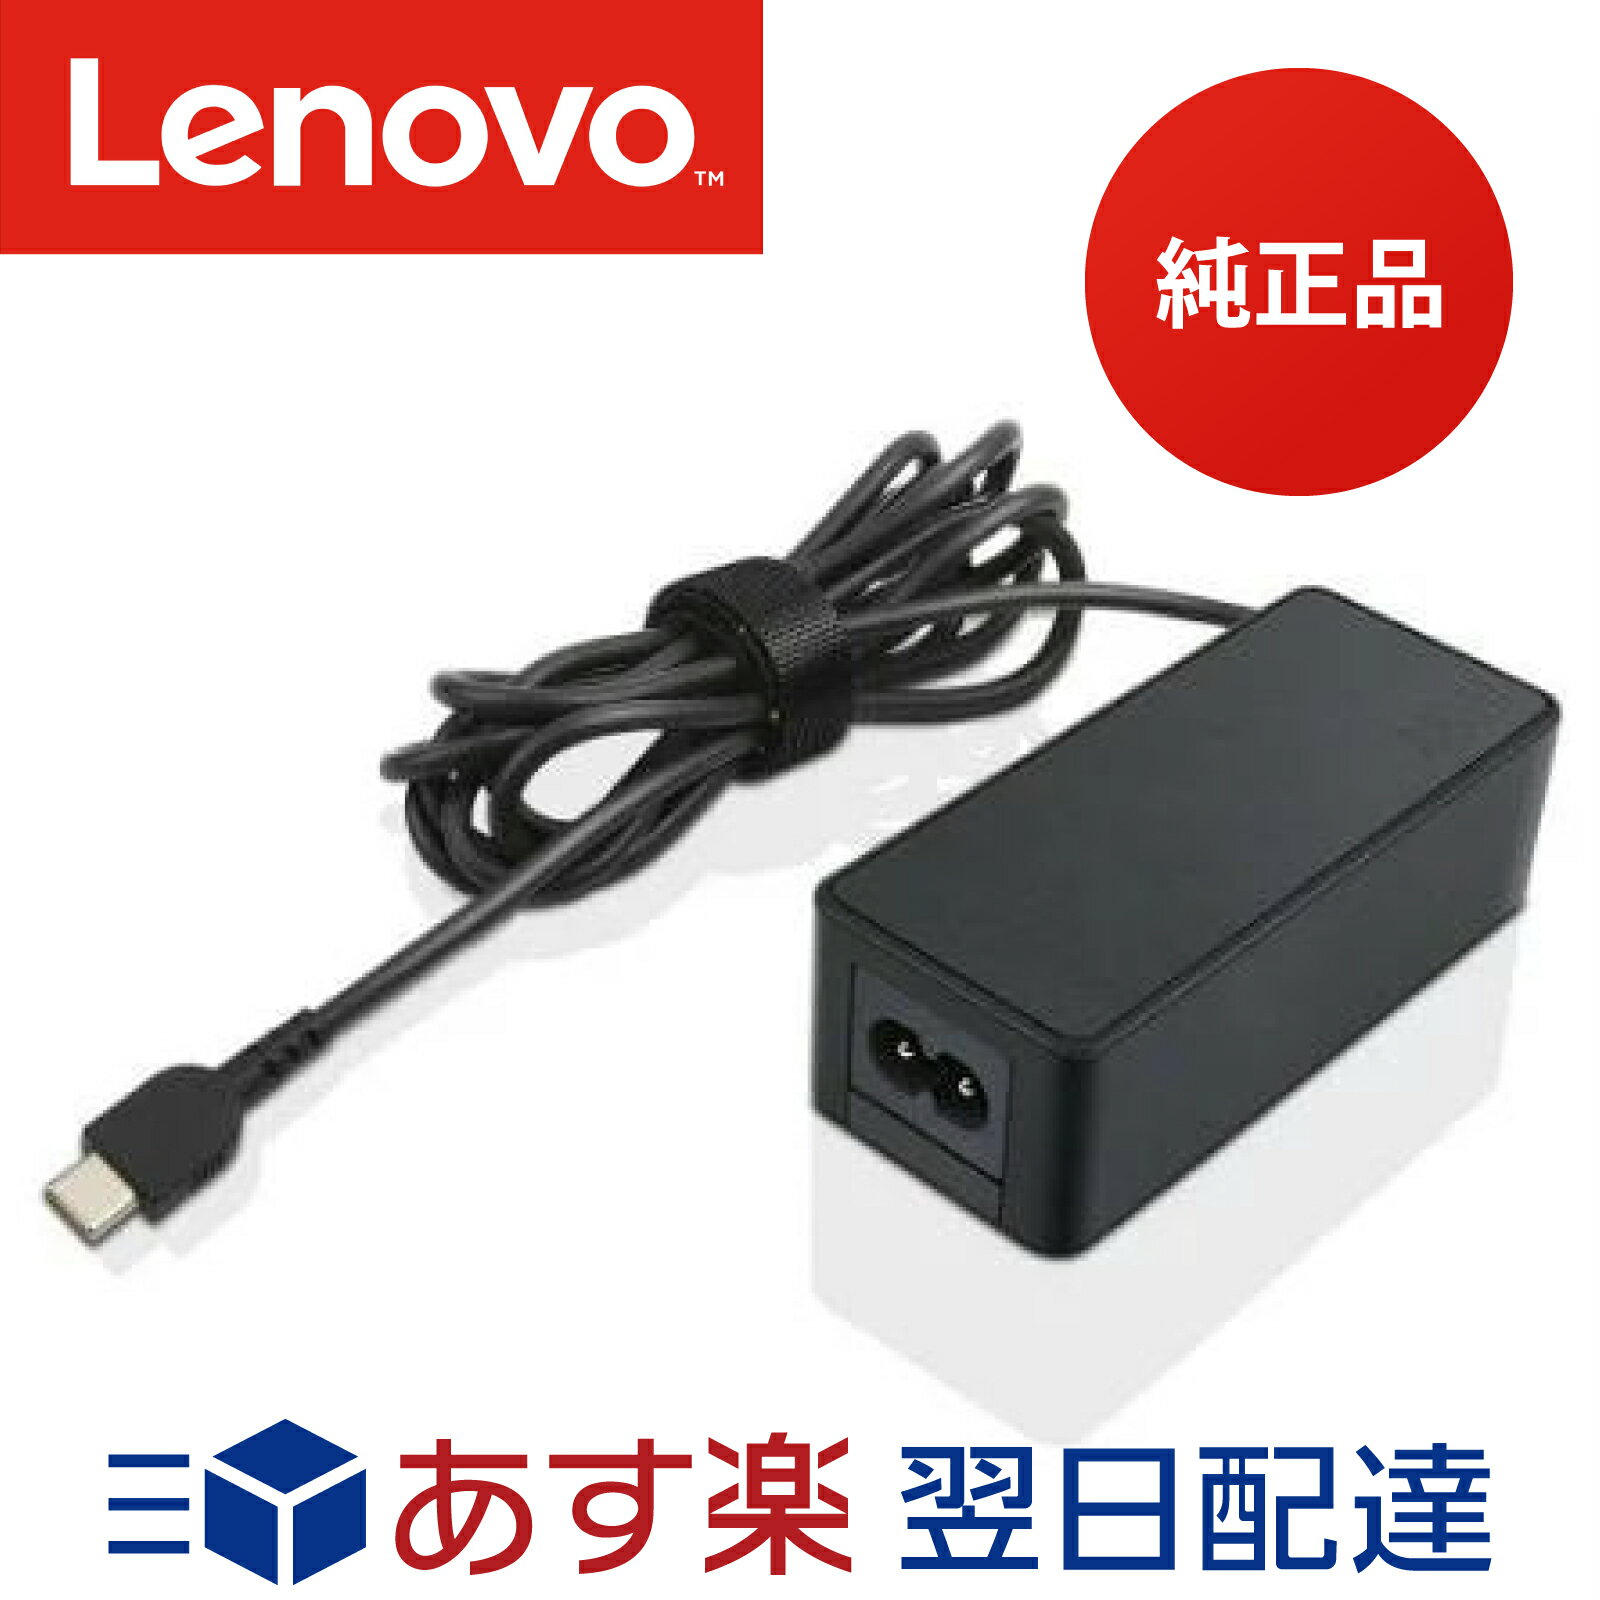 【メーカー純正品 1年保証】 Lenovo レノボ ACアダプター Type-C 45W <strong>4X20M26255</strong> USB